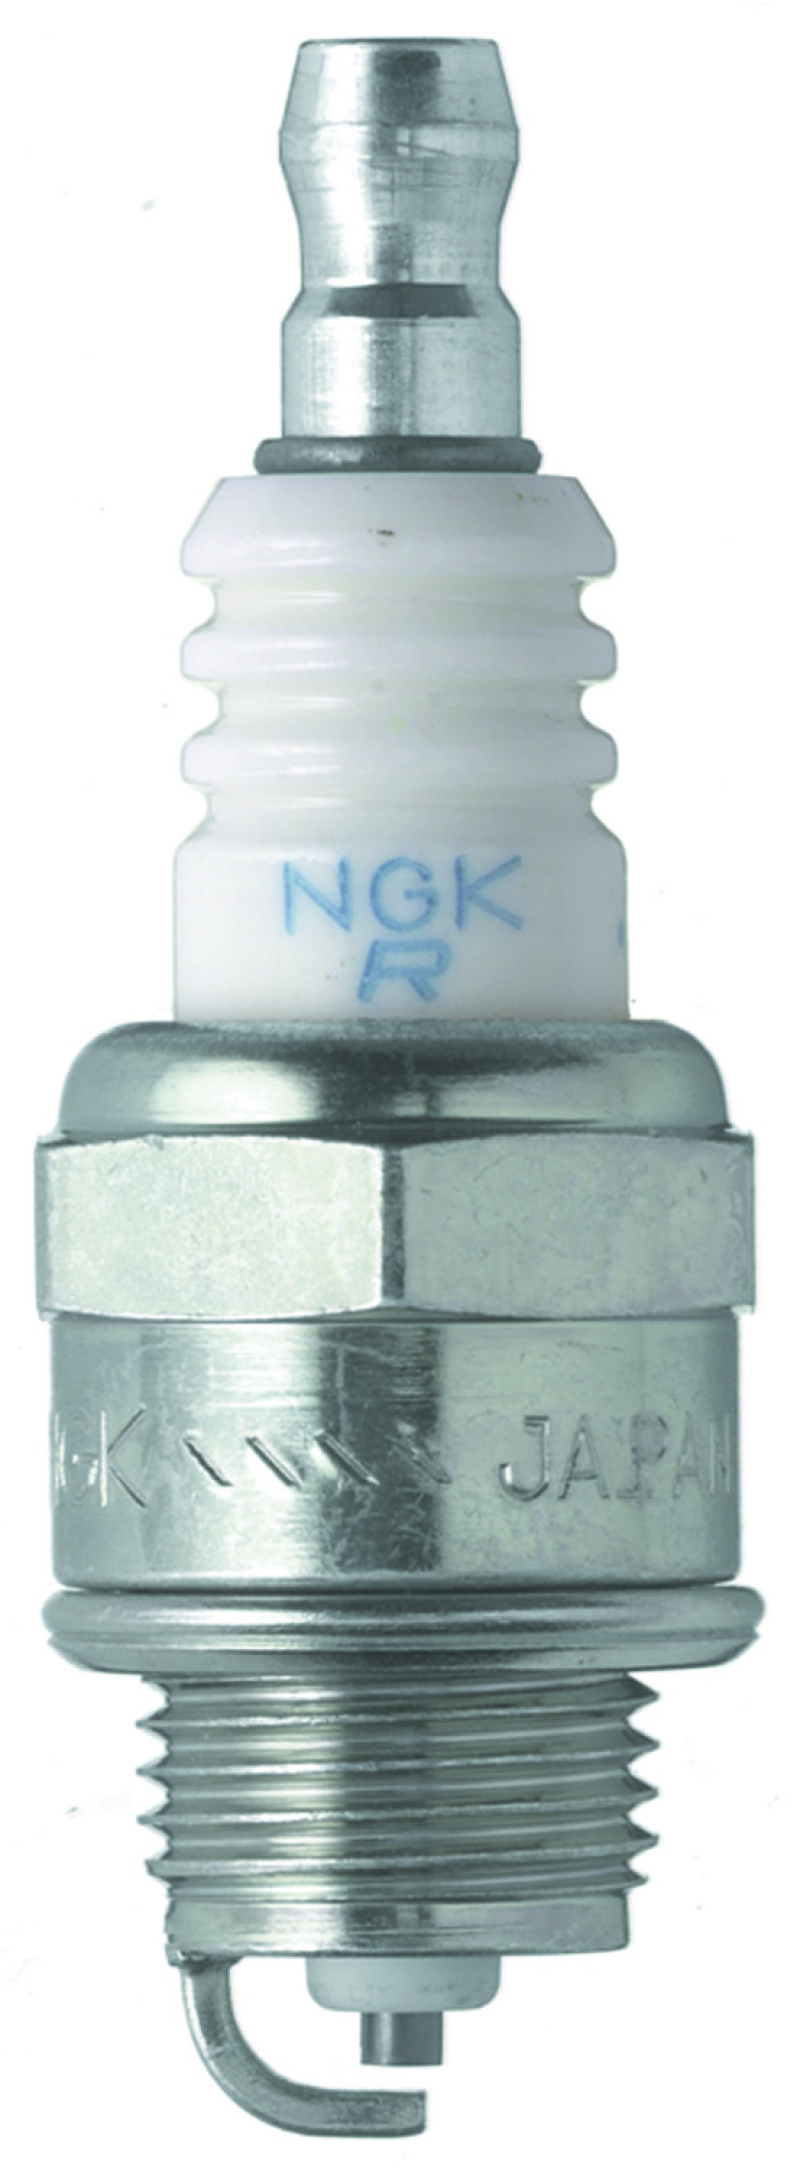 NGK Standard Spark Plug Box of 10 (BPMR6A-10) - 1029